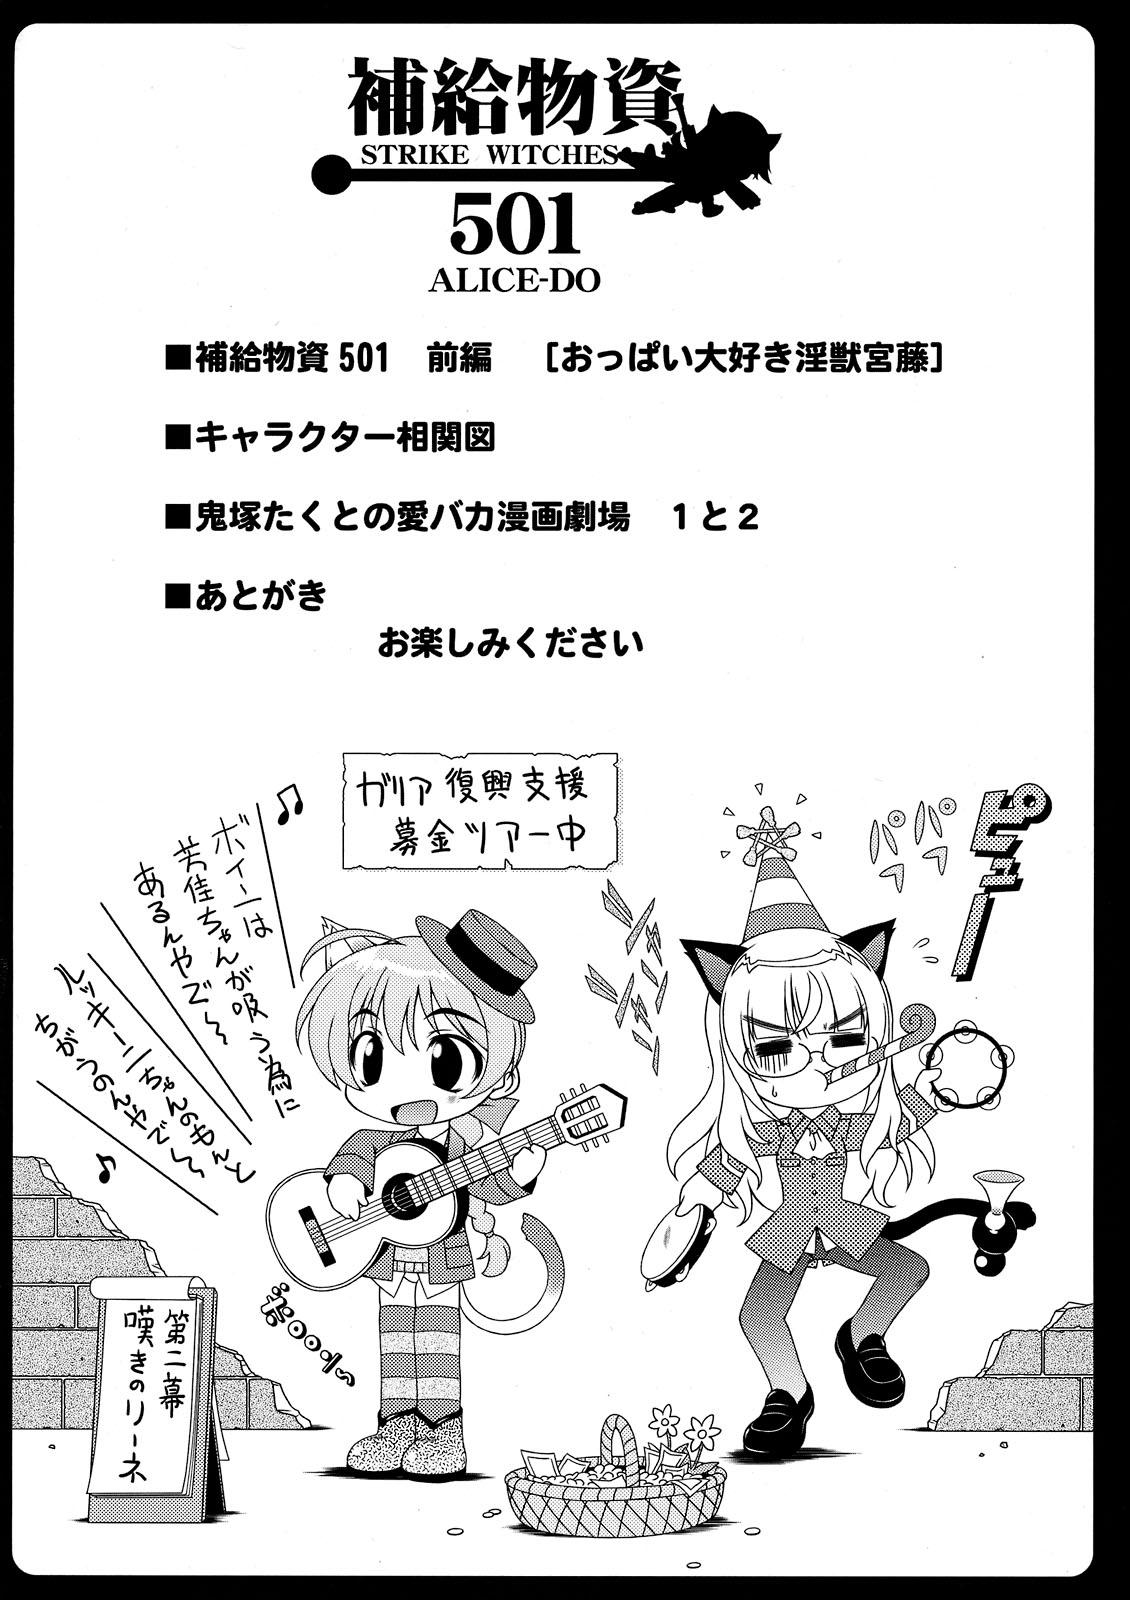 Novinho Hokyuubusshi 501 - Strike witches Inked - Page 4